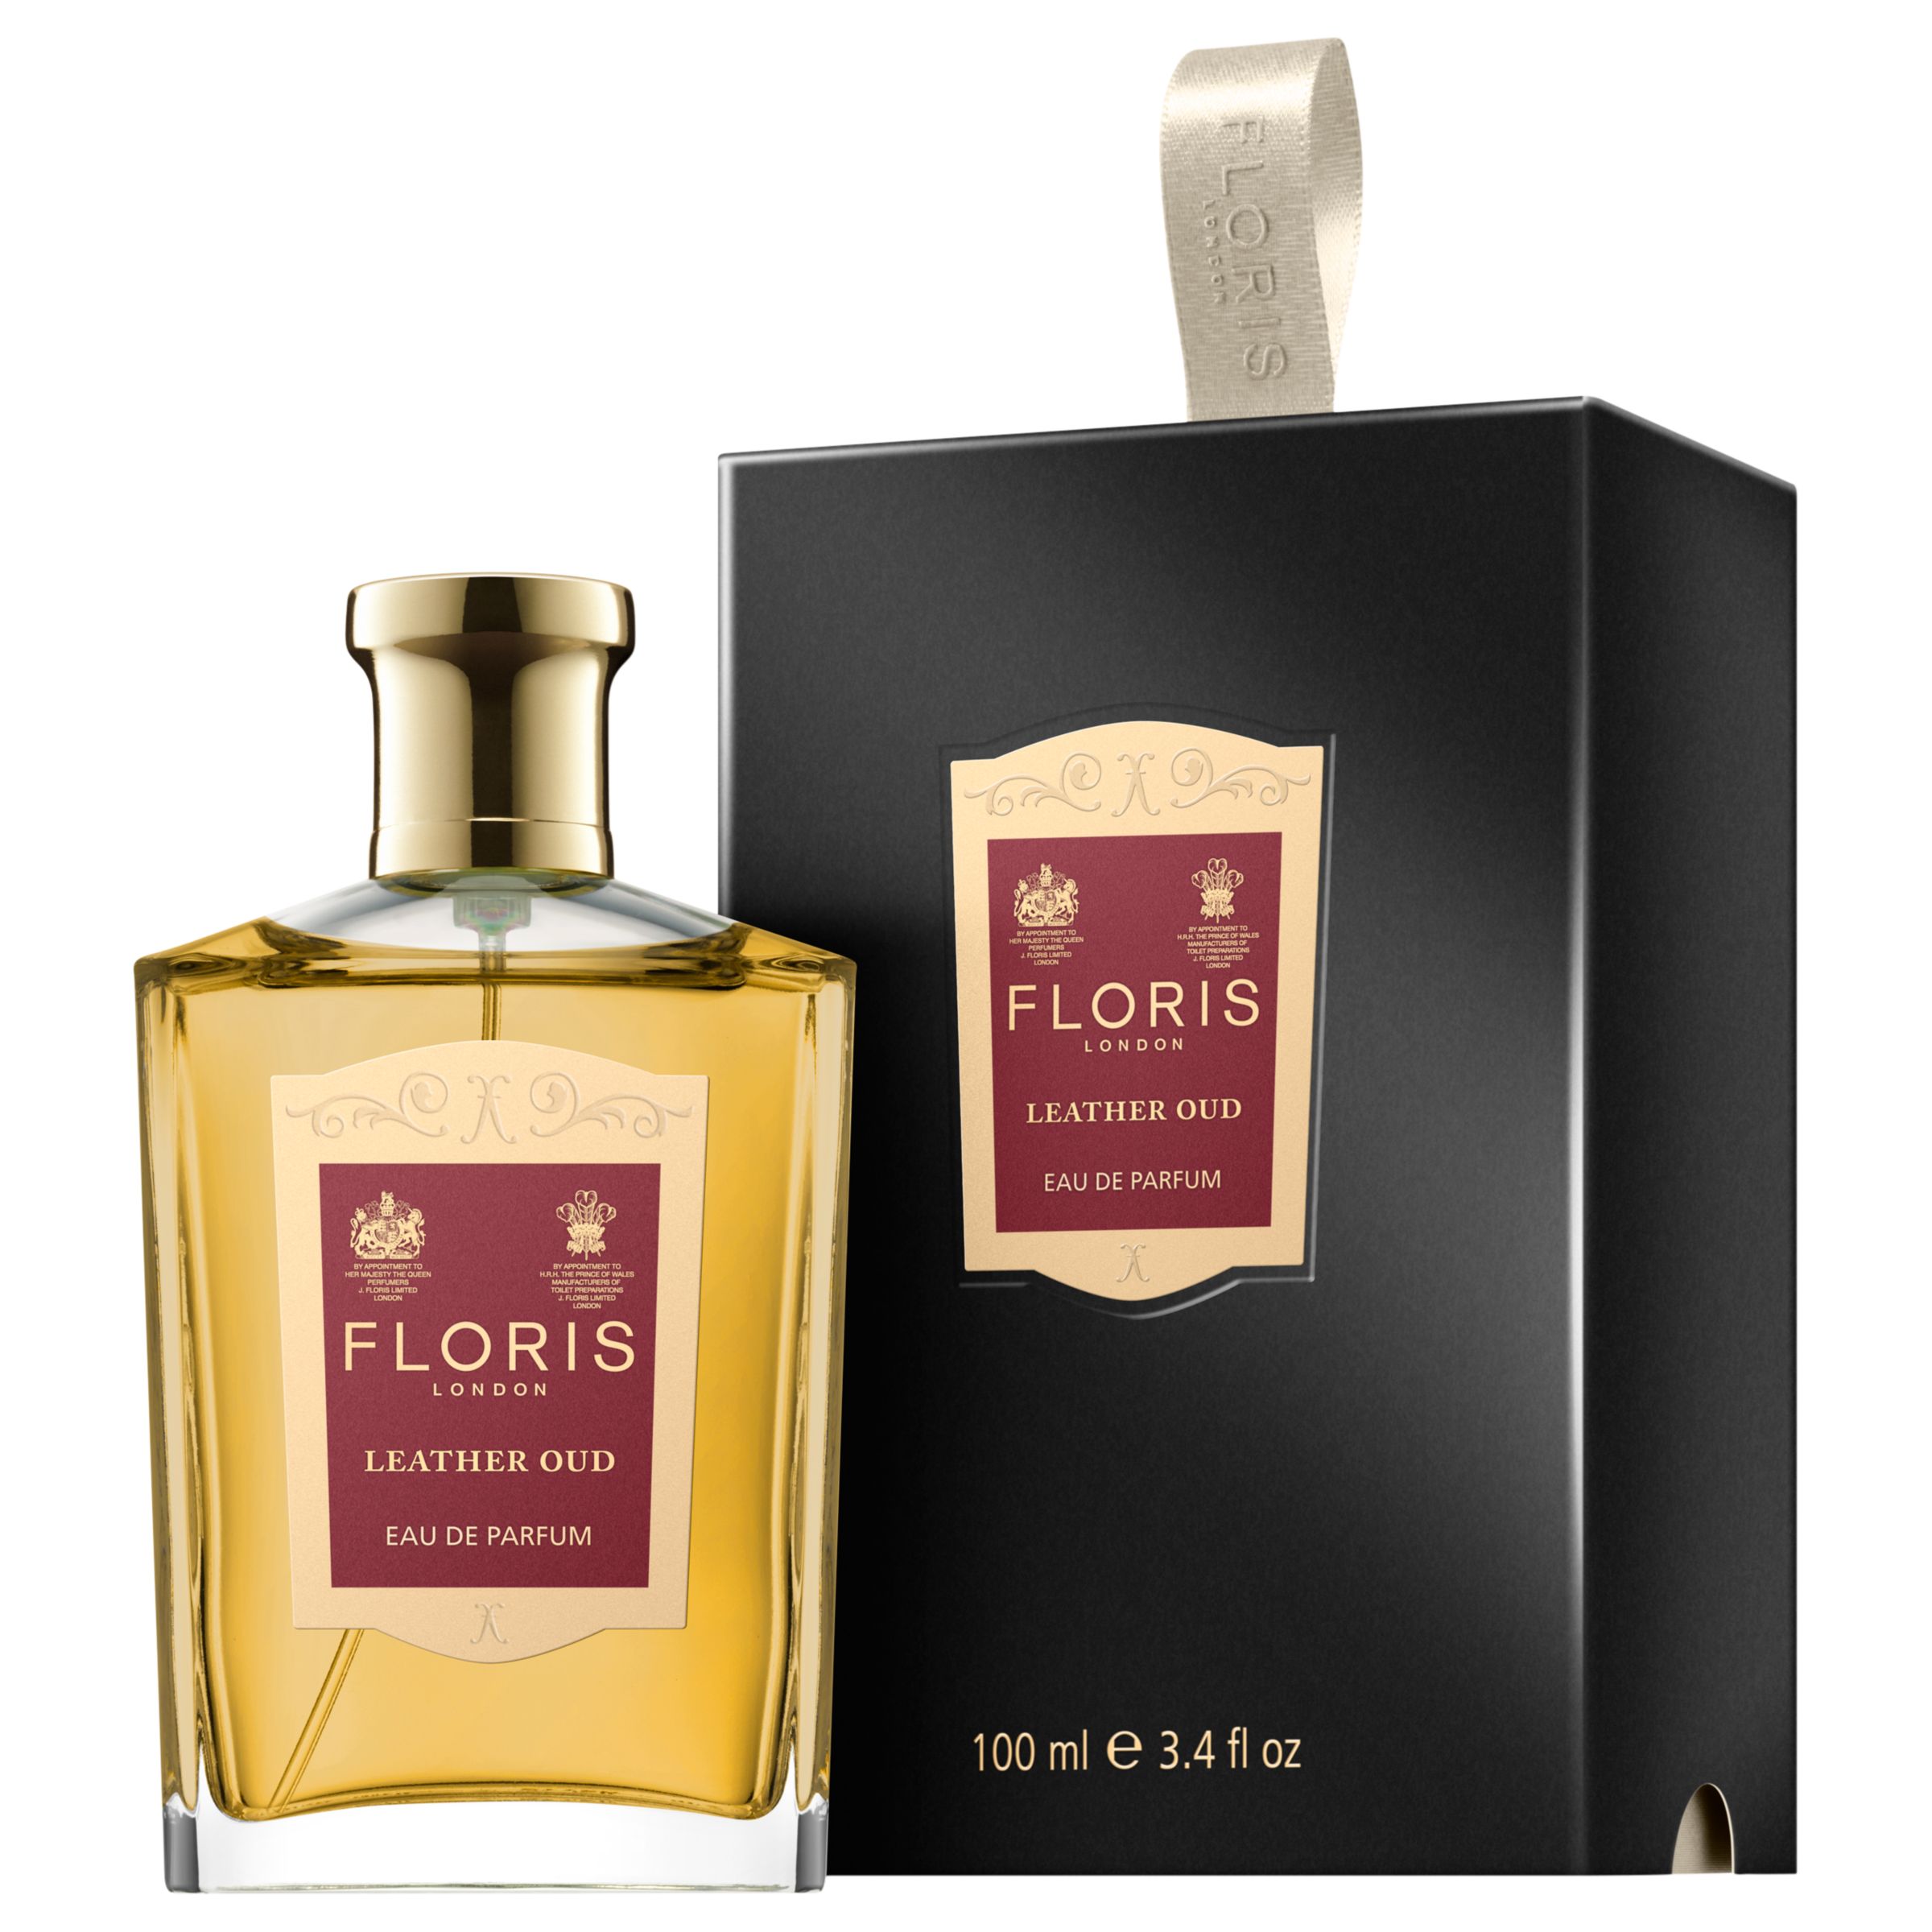 Floris Leather Oud Eau de Parfum, 100ml